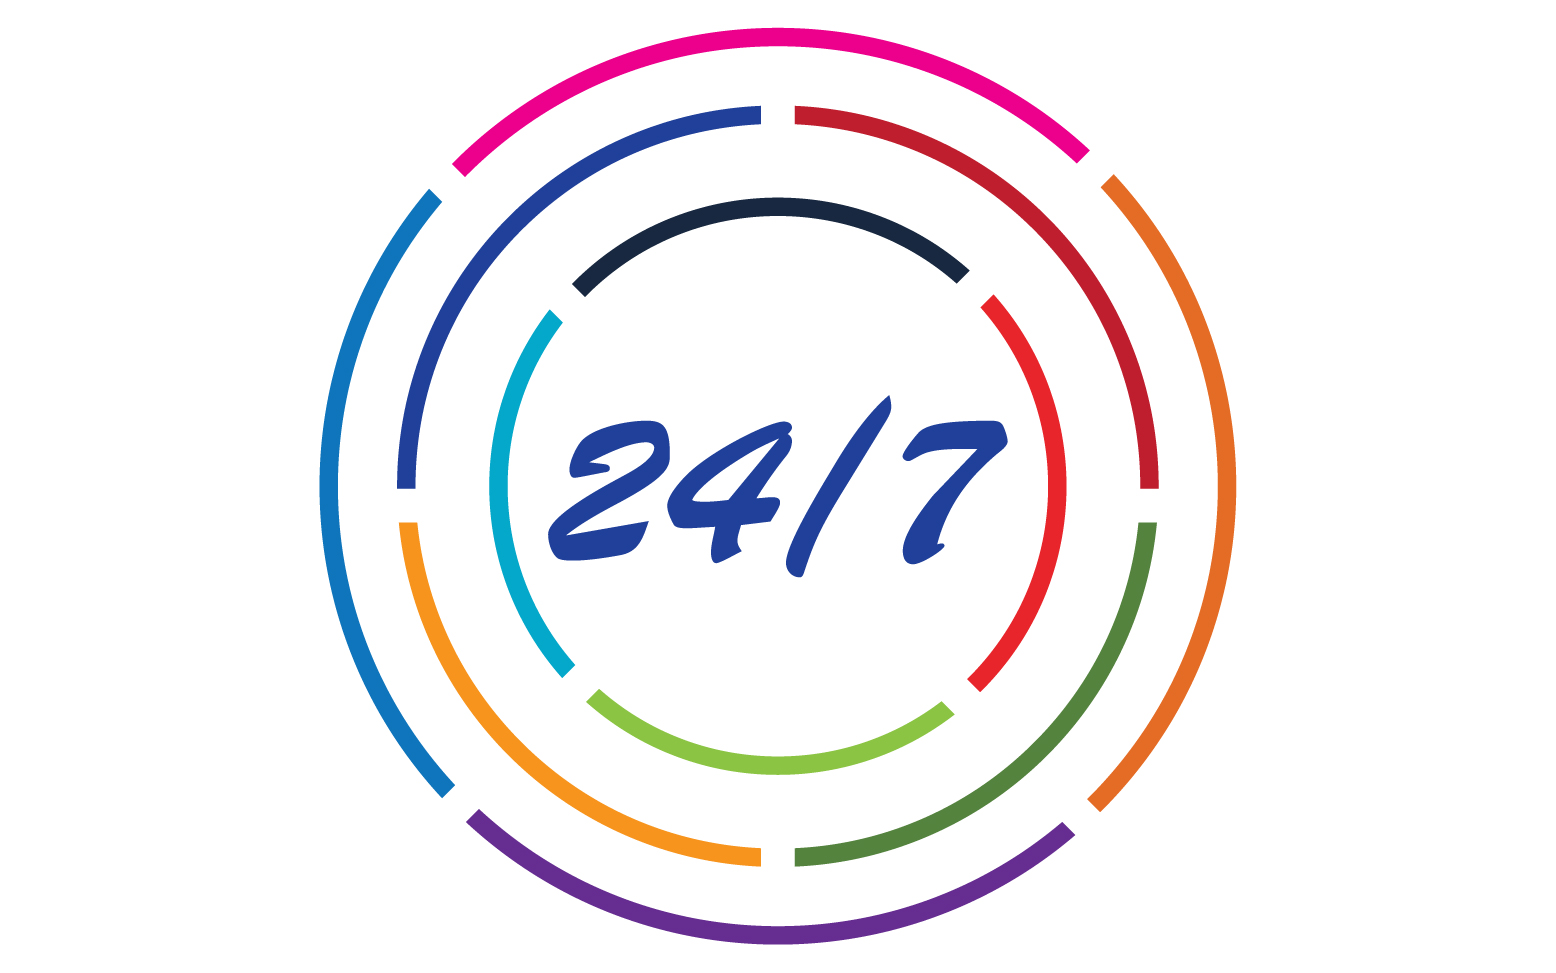 24 hour time icon logo design v132